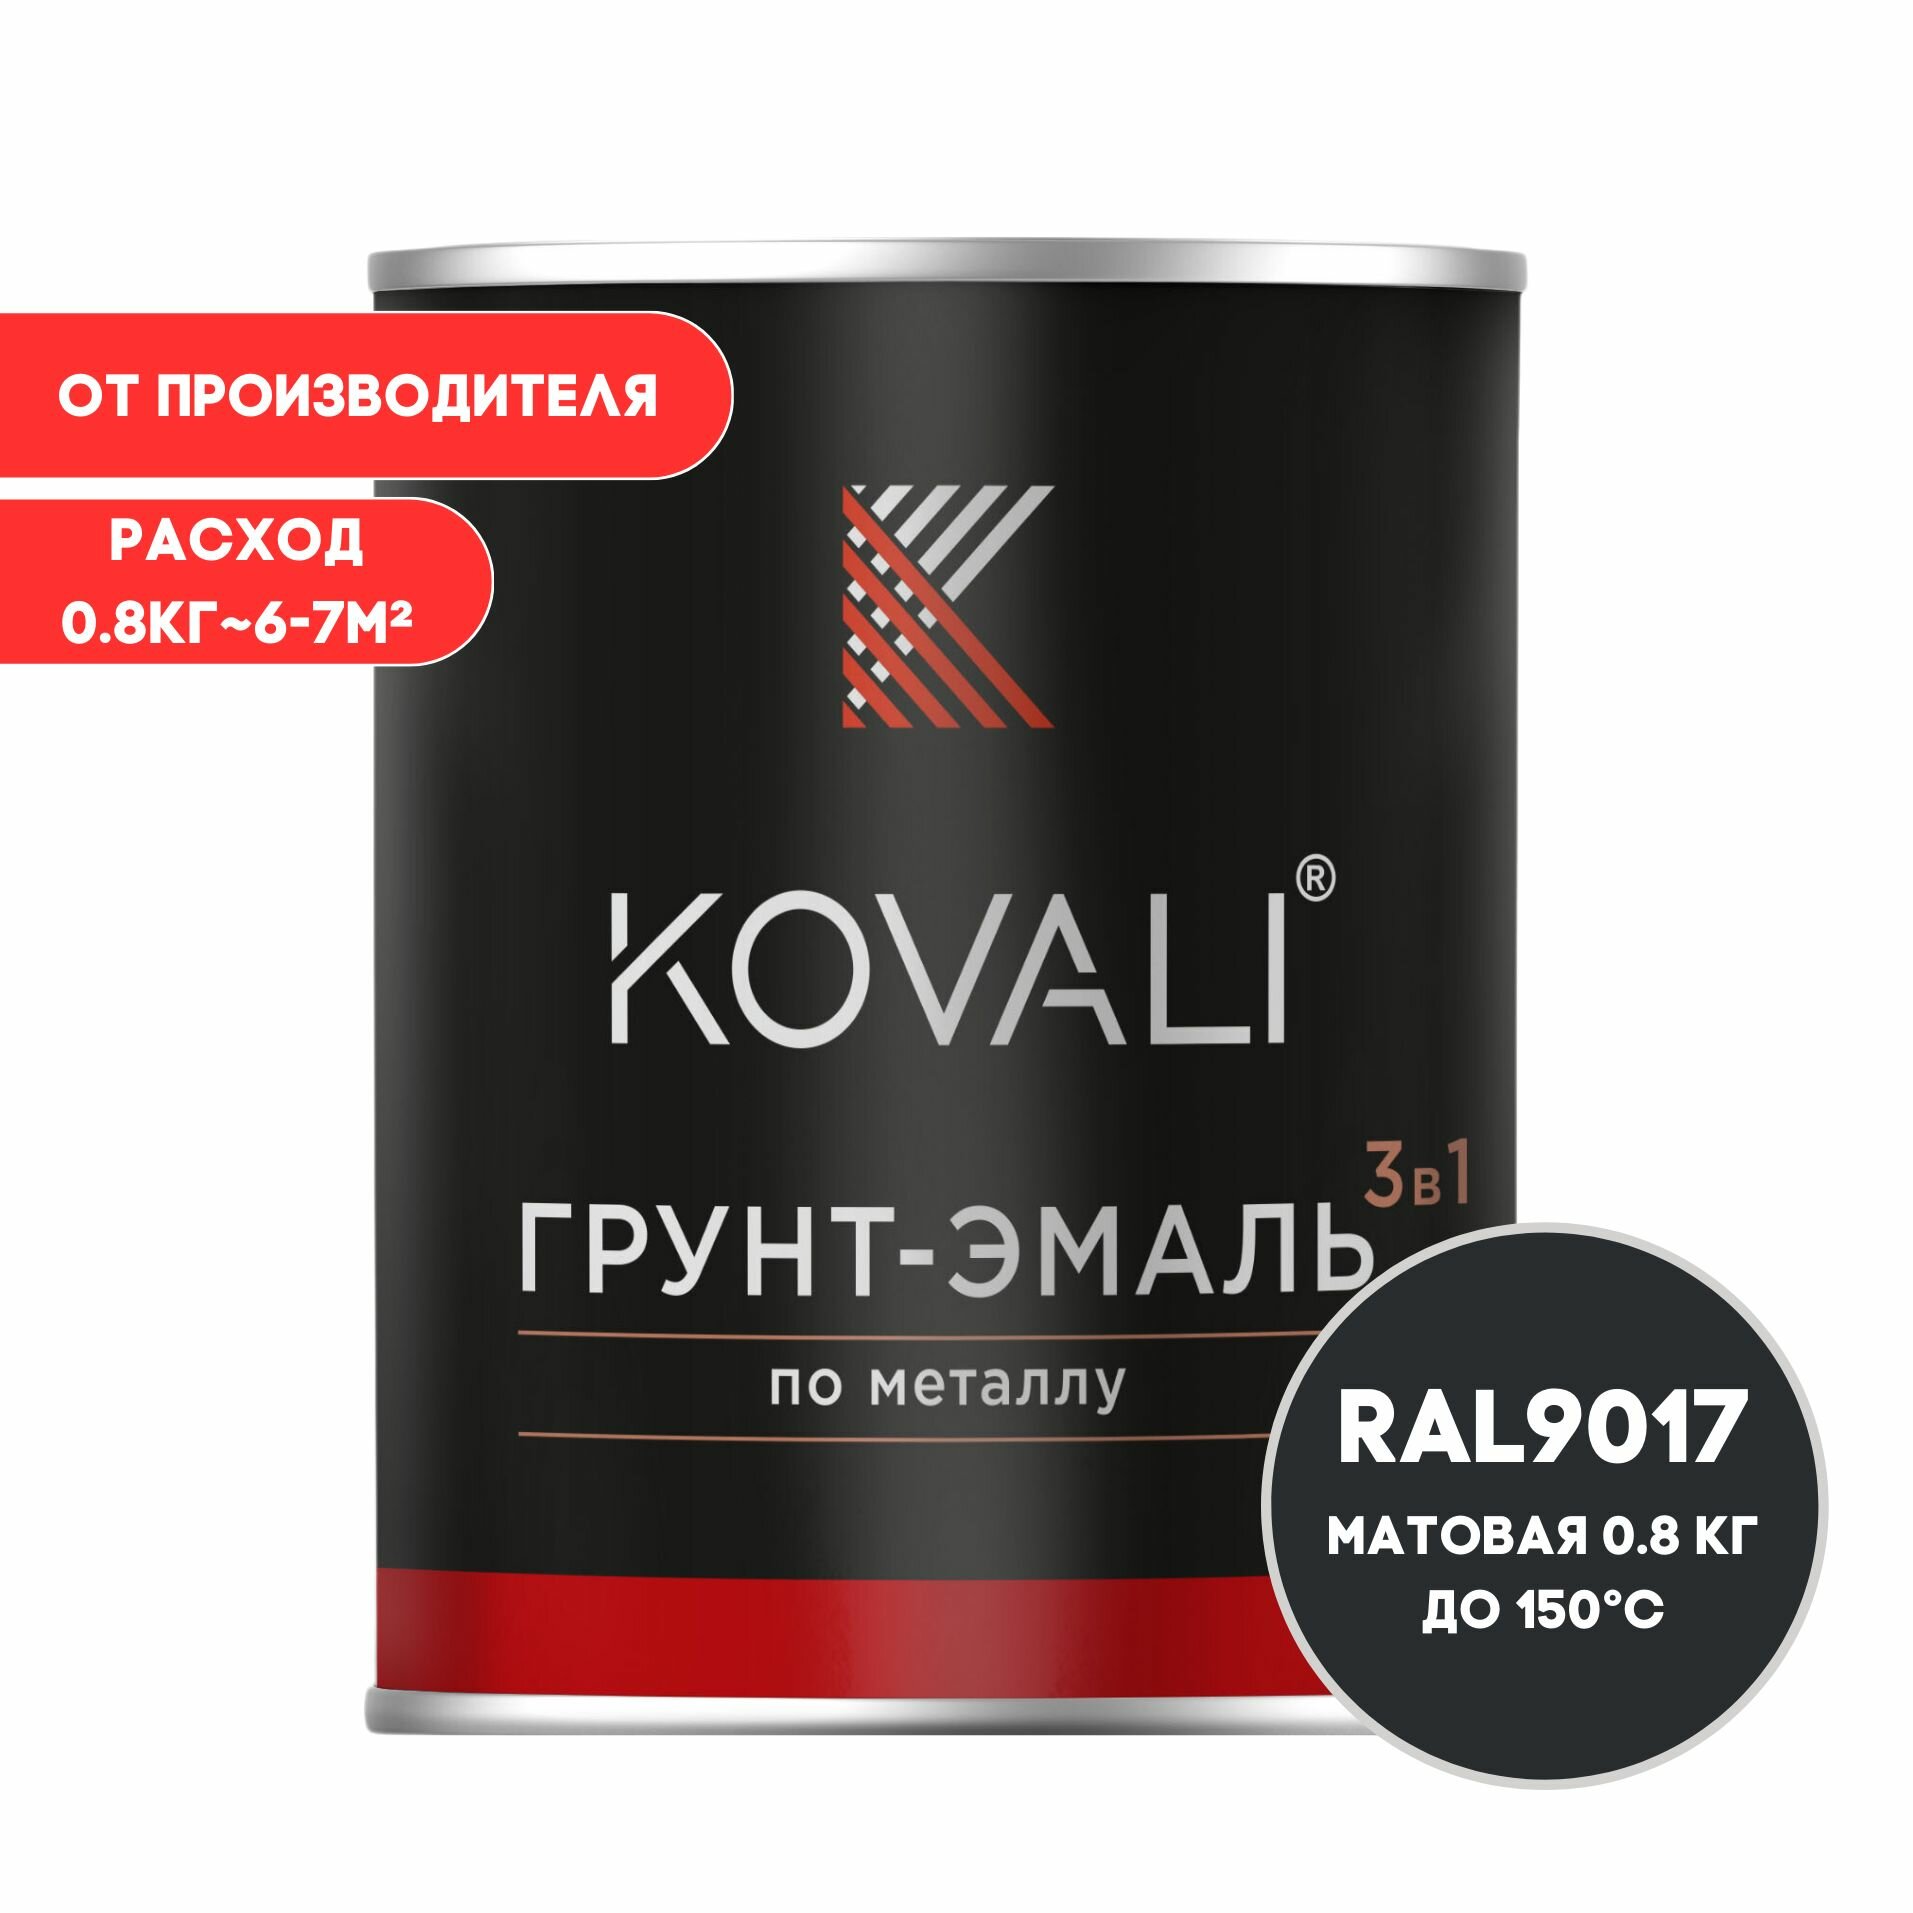 Грунт-эмаль 3 в 1 KOVALI матовая Транспортный черный RAL 9017 08кг краска по металлу по ржавчине быстросохнущая  краска Ковали